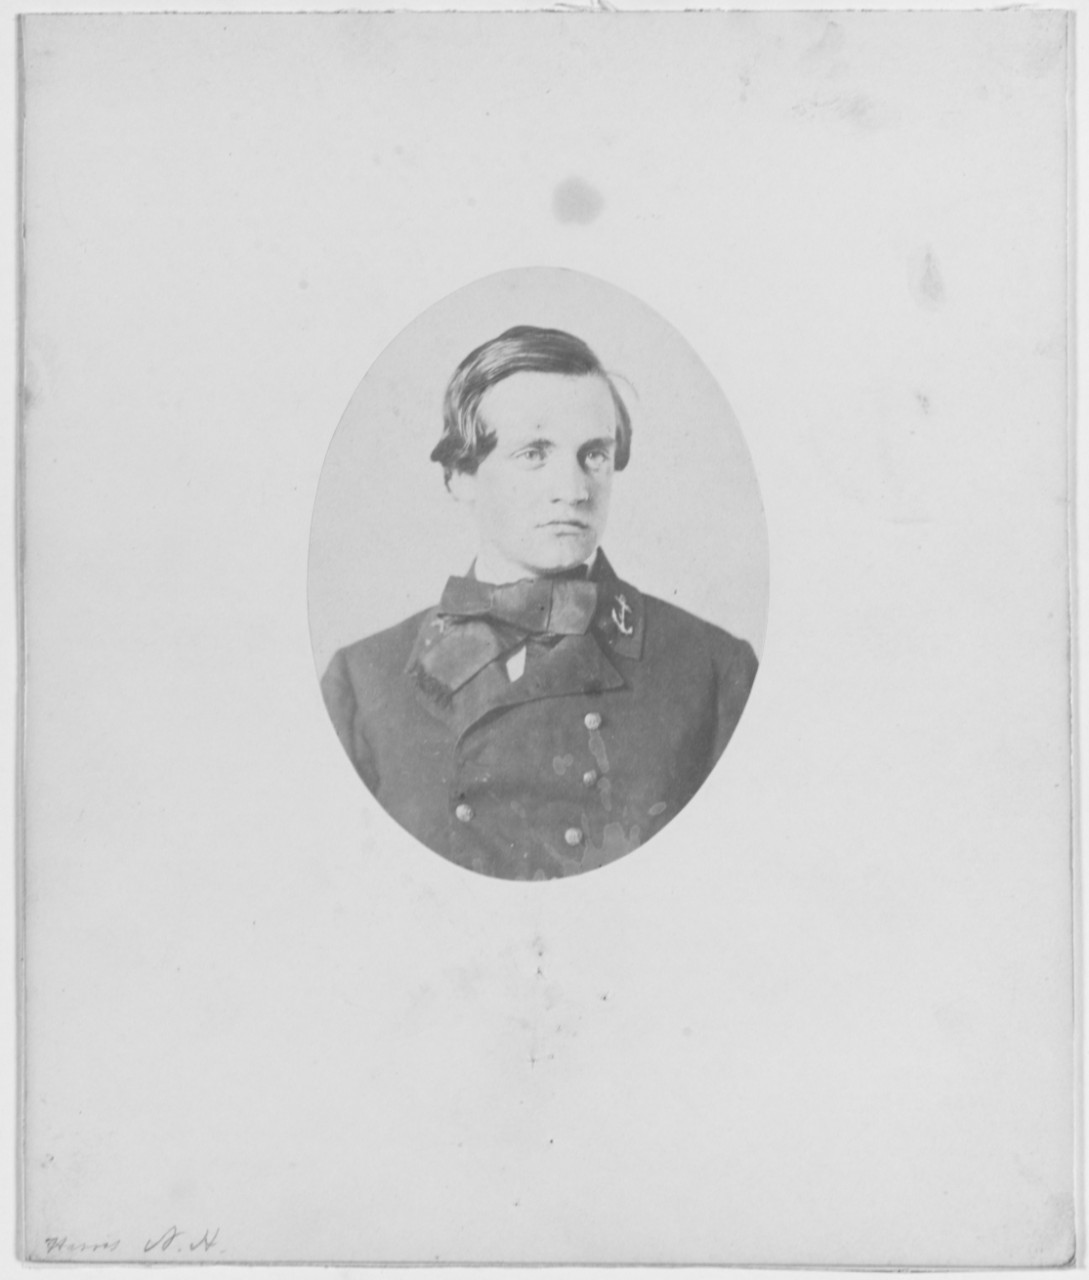 Midshipman Joseph W. Harris, USN